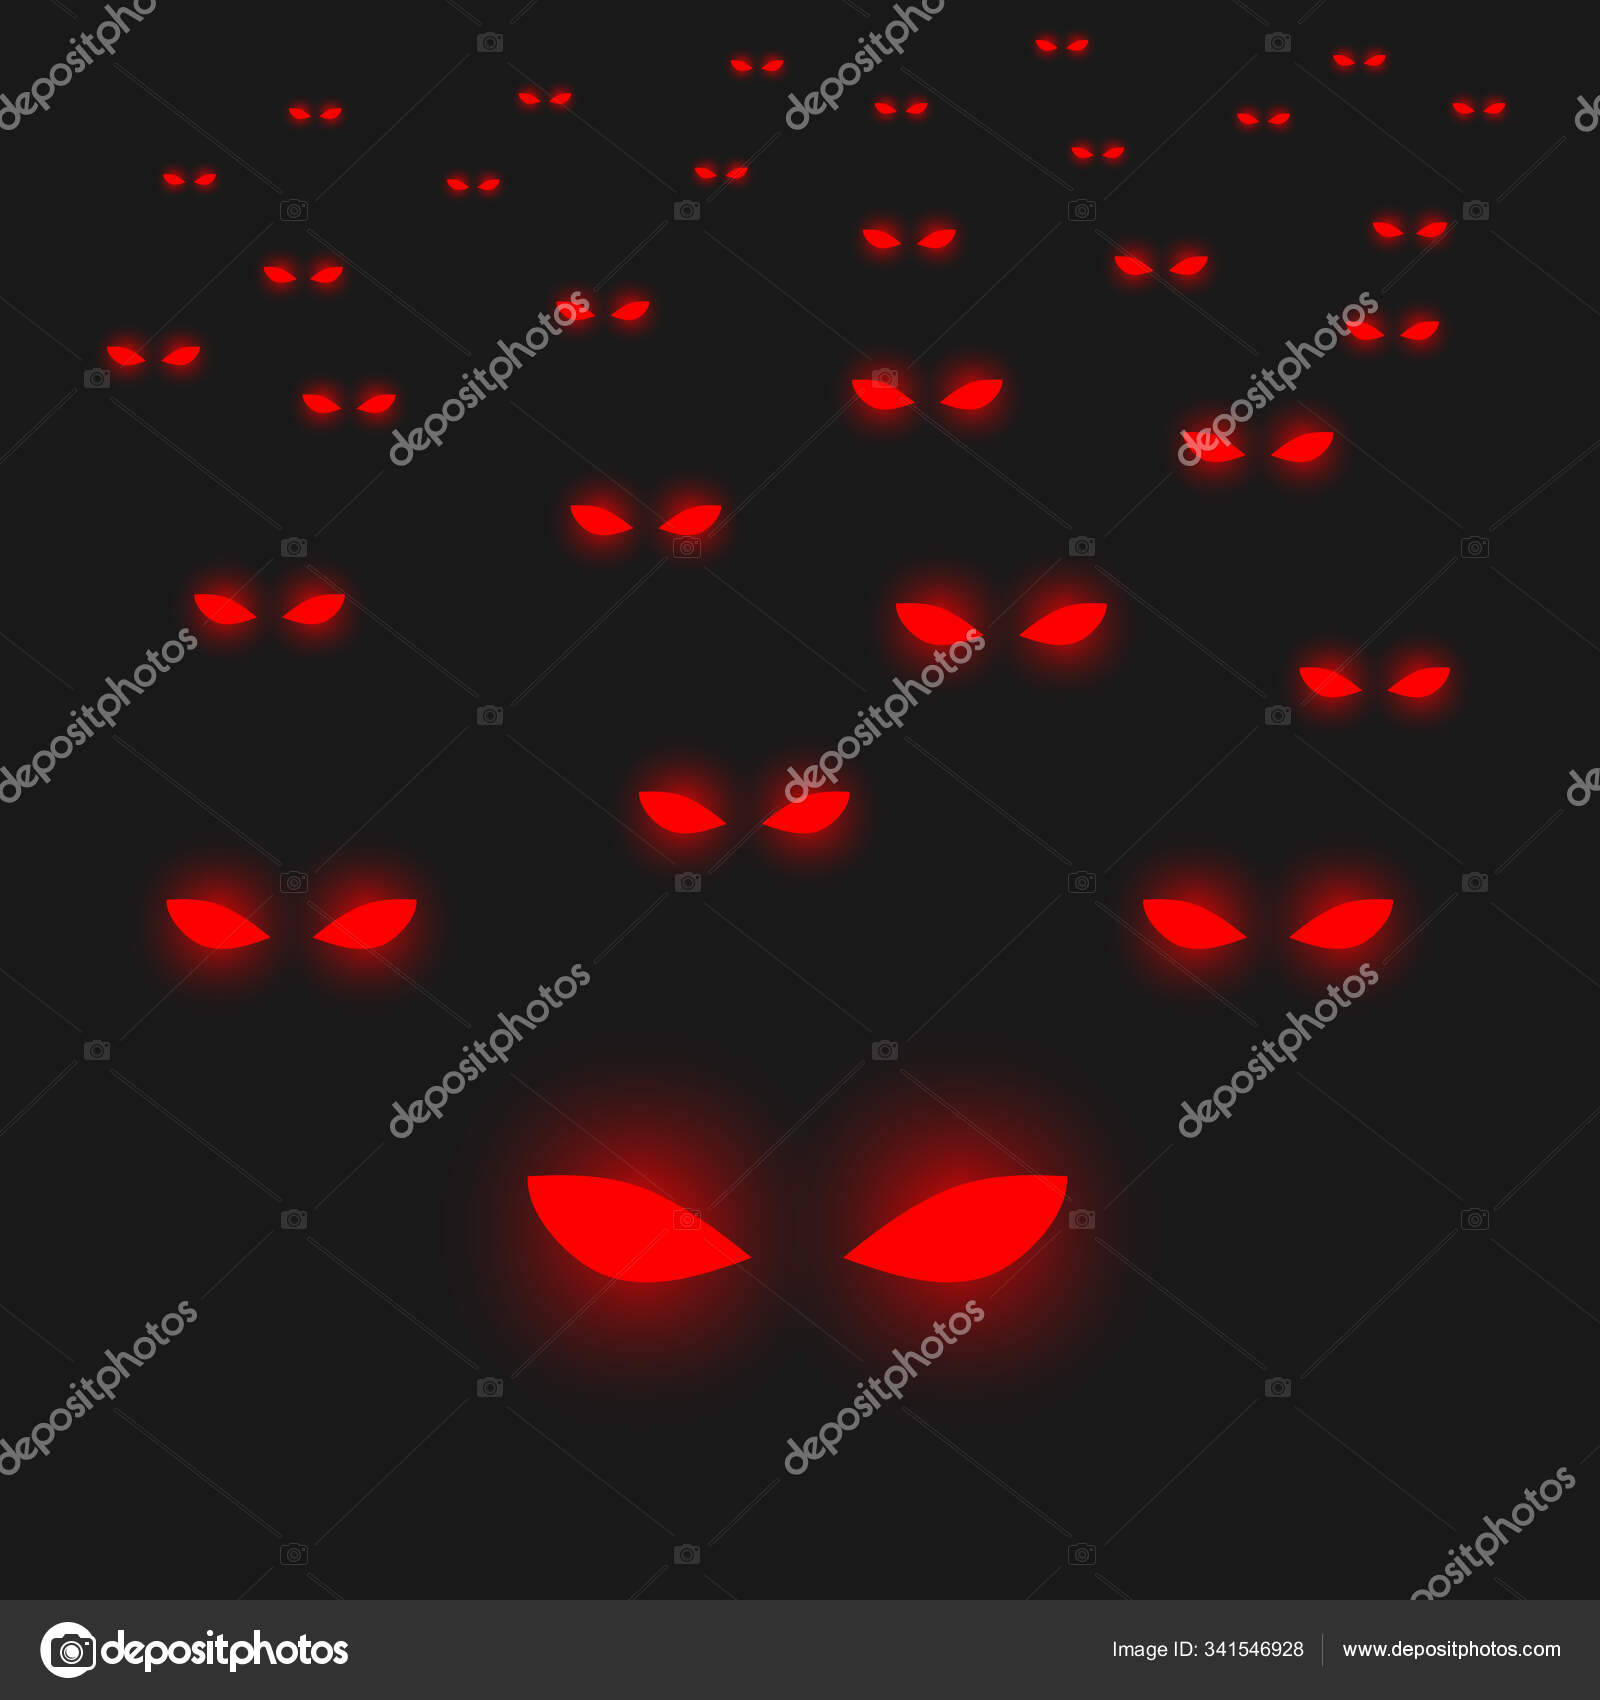 Vector mắt đỏ trên nền đen: Hình ảnh với vector mắt đỏ trên nền đen sẽ khiến bạn phải trầm trồ vì độ bóng bẩy và hiệu ứng quyến rũ của nó. Từ các chi tiết mịn màng đến hiệu ứng phản chiếu, bạn sẽ tìm thấy sự trang trí hoàn hảo cho điện thoại, máy tính bảng hoặc máy tính của mình.